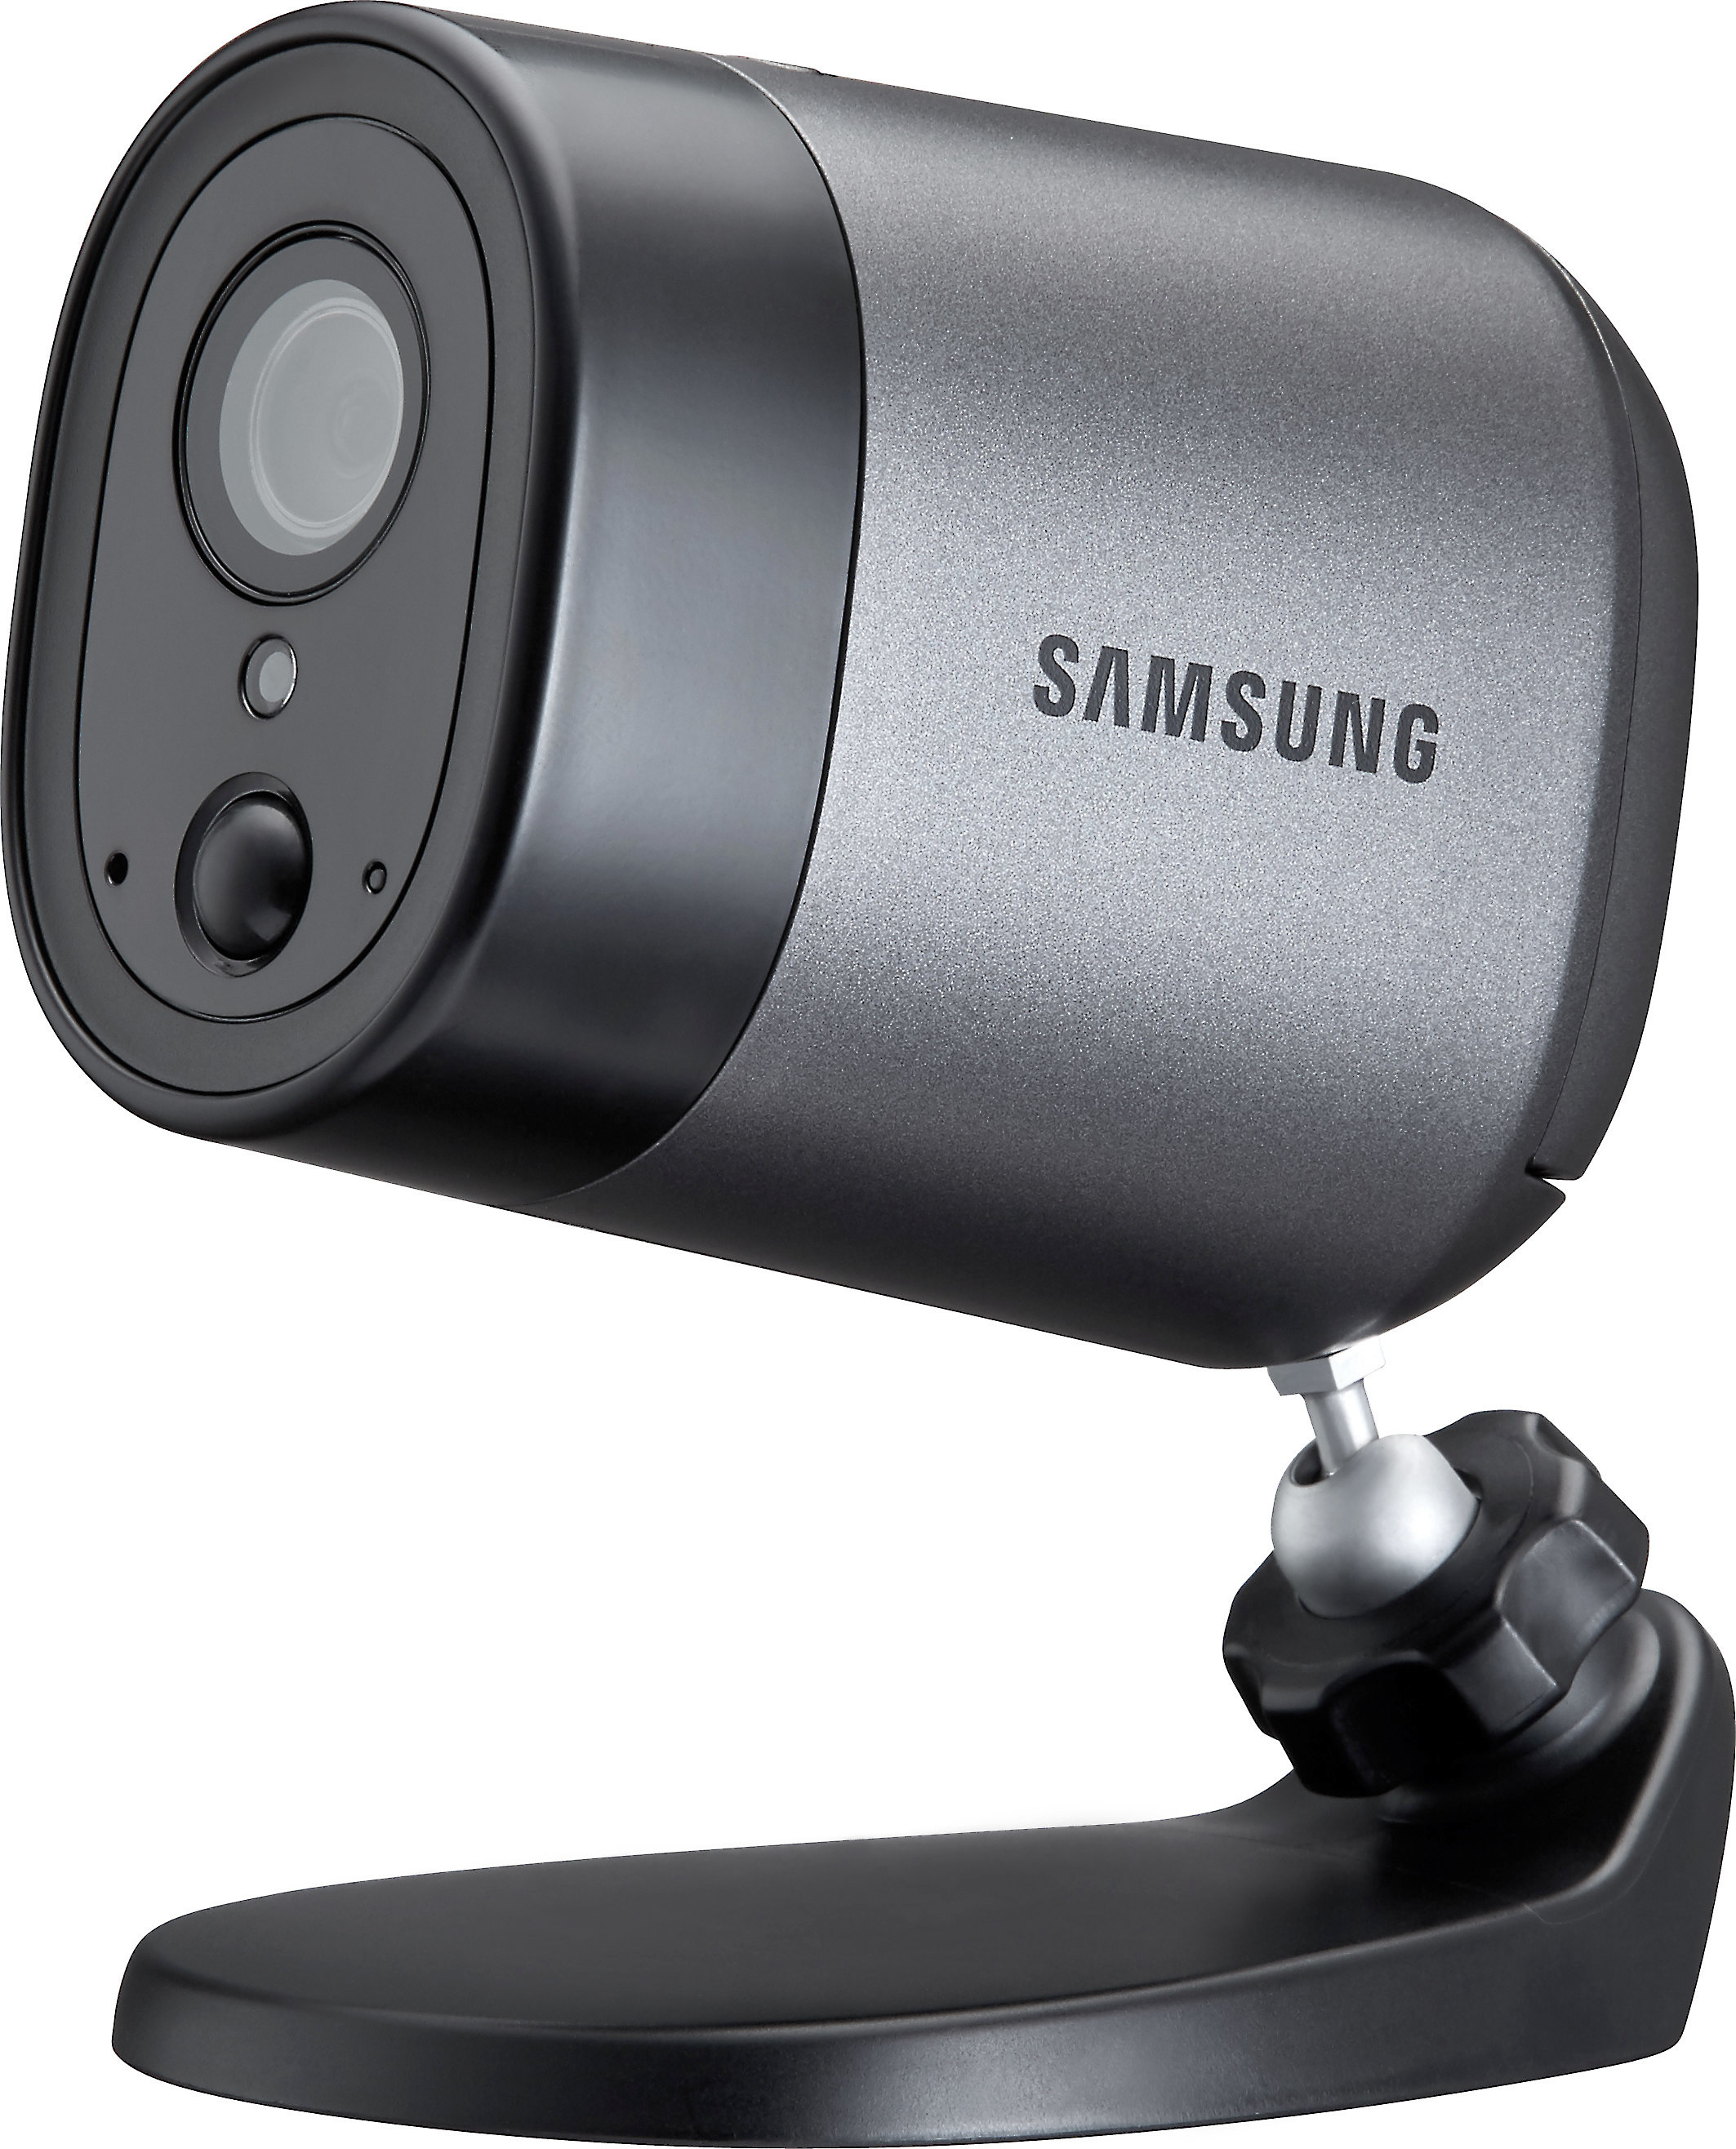 samsung smartcam a1 review